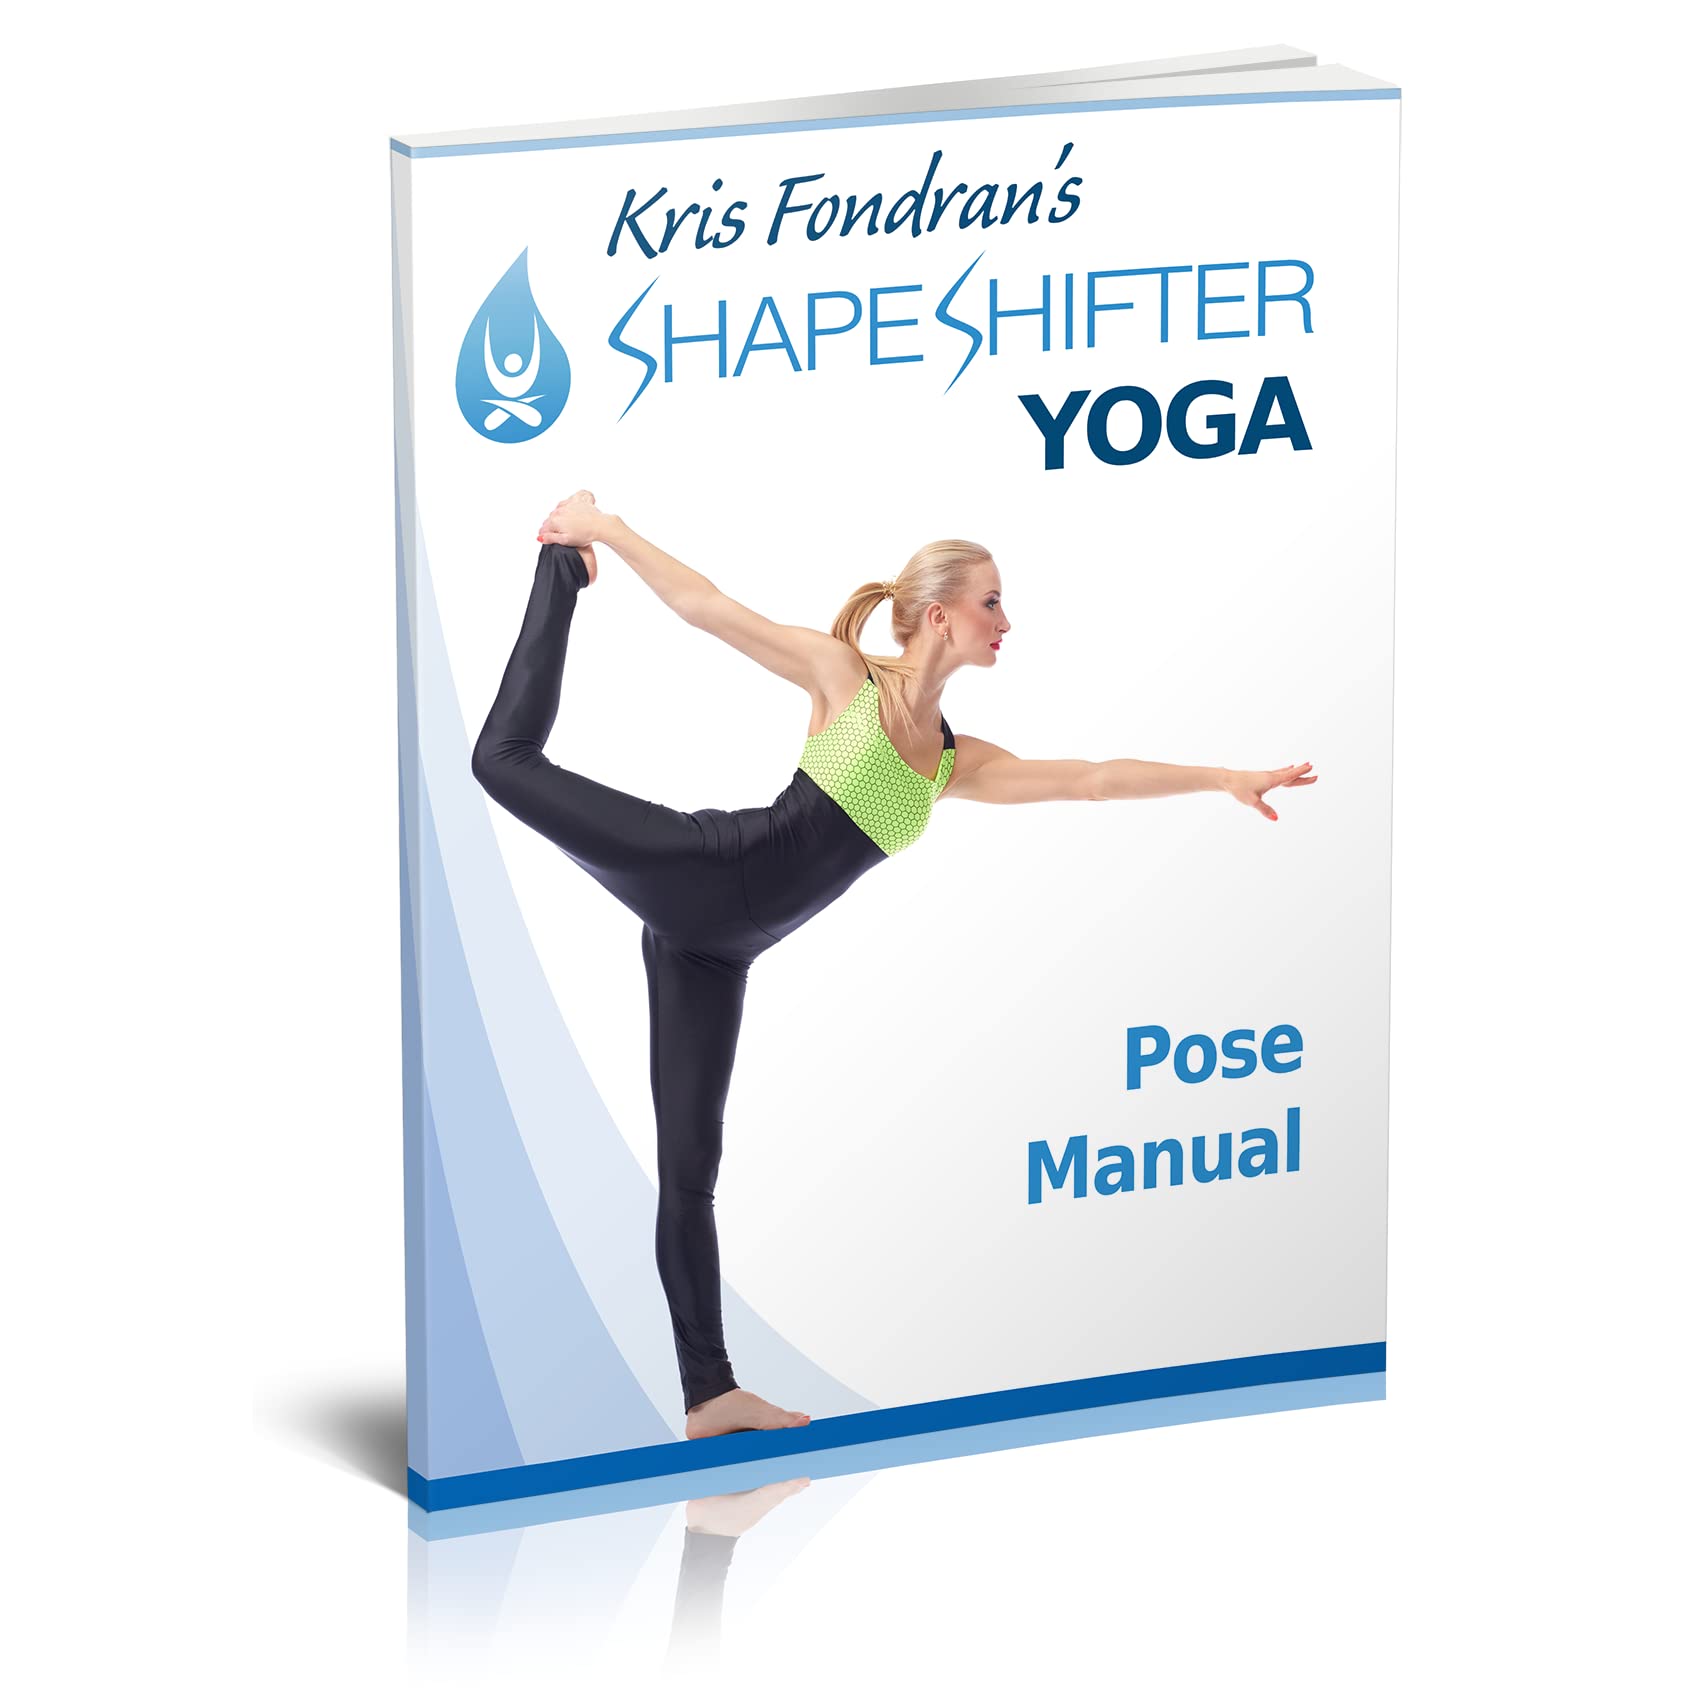 Kris Fondran's ShapeShifter Yoga